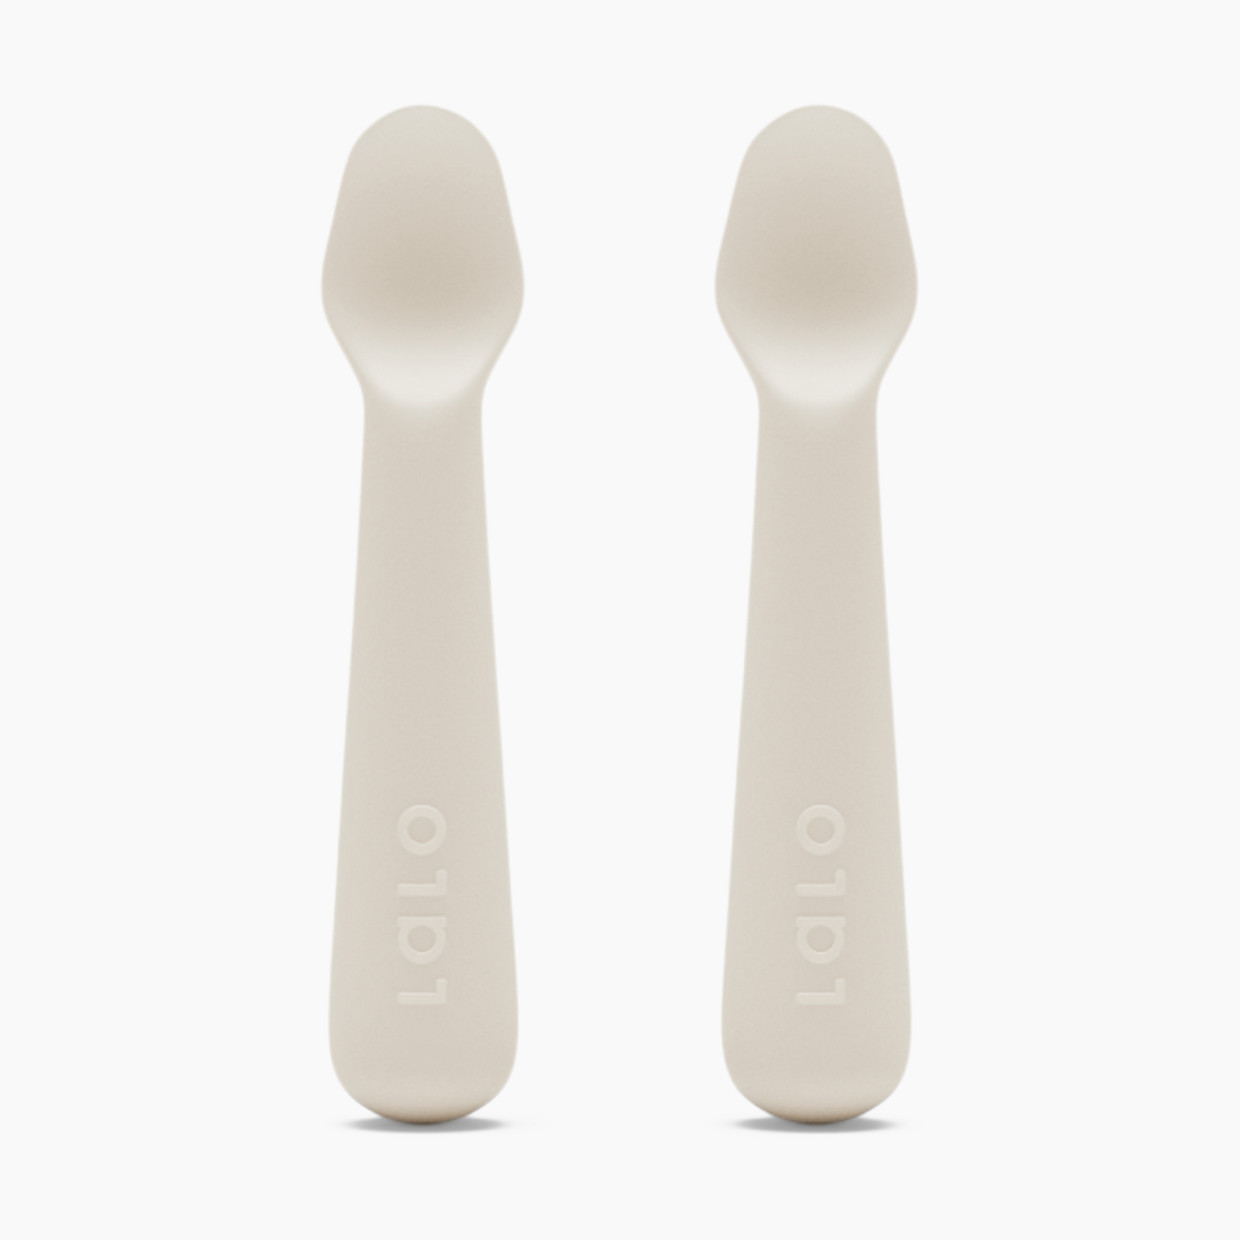 Lalo Little Spoon - Oatmeal, 2.